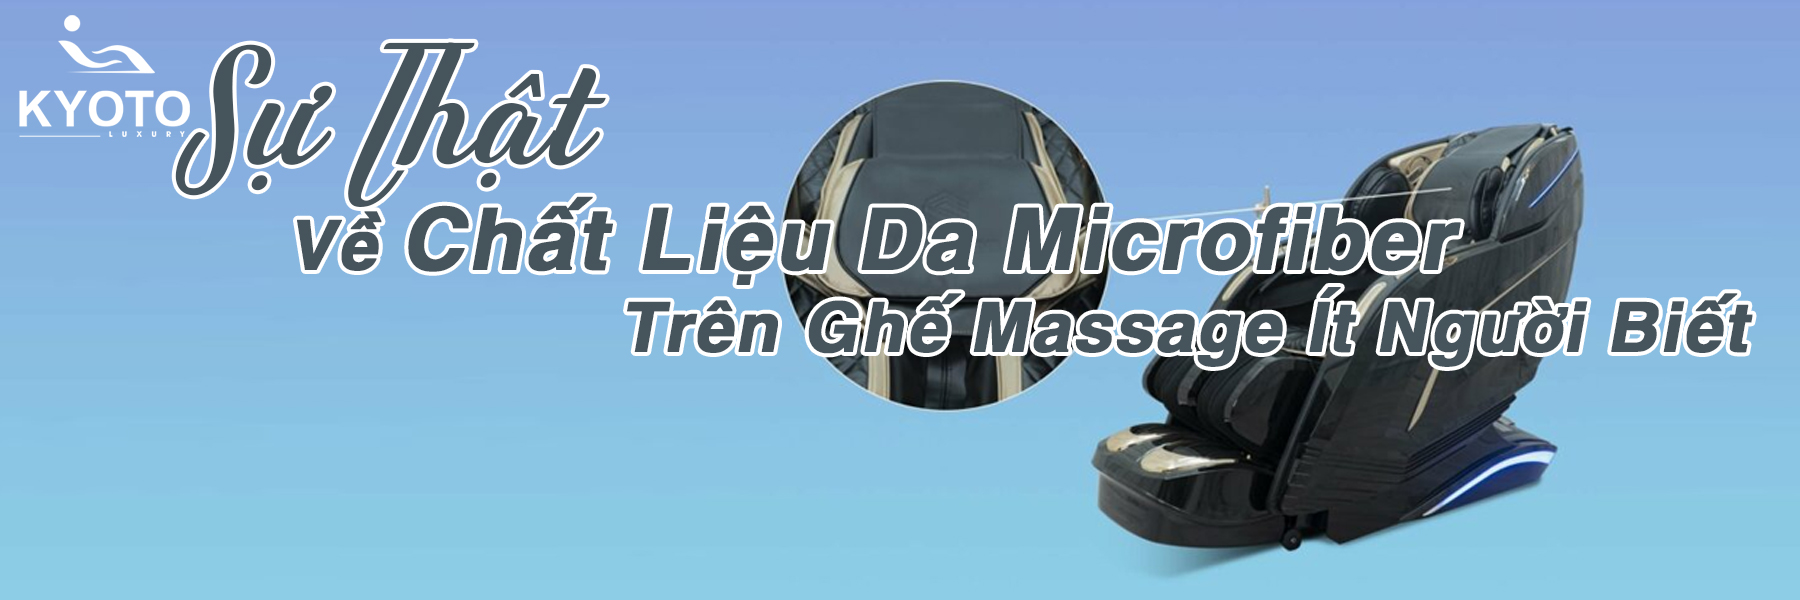 Sự Thật Về Chất Liệu Da Microfiber Trên Ghế Massage Ít Người Biết